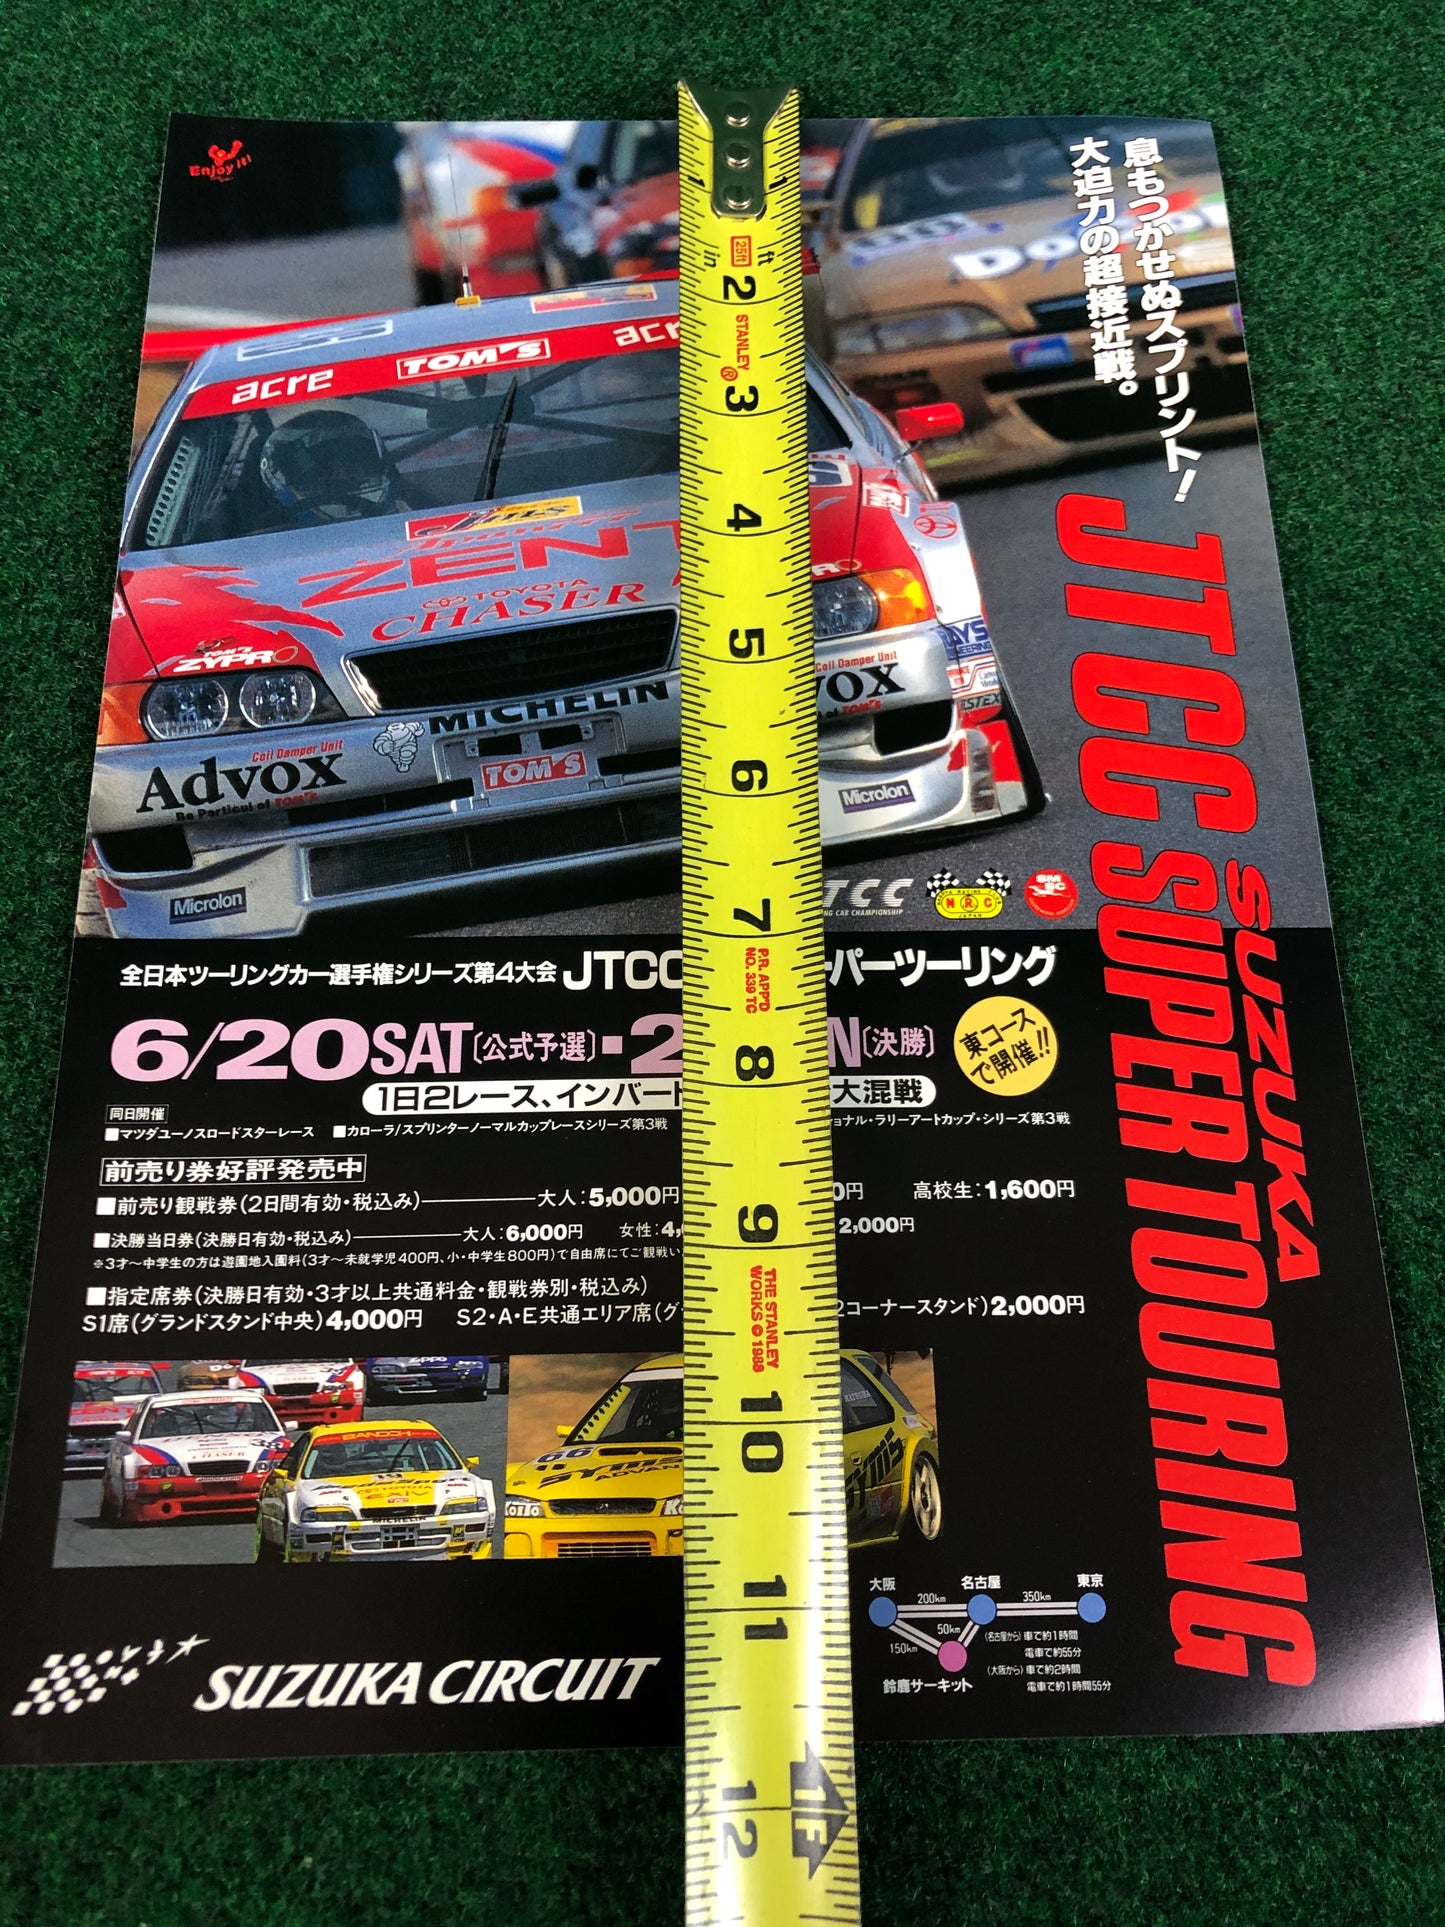 JTCC Suzuka Super Touring 1998 Flyer